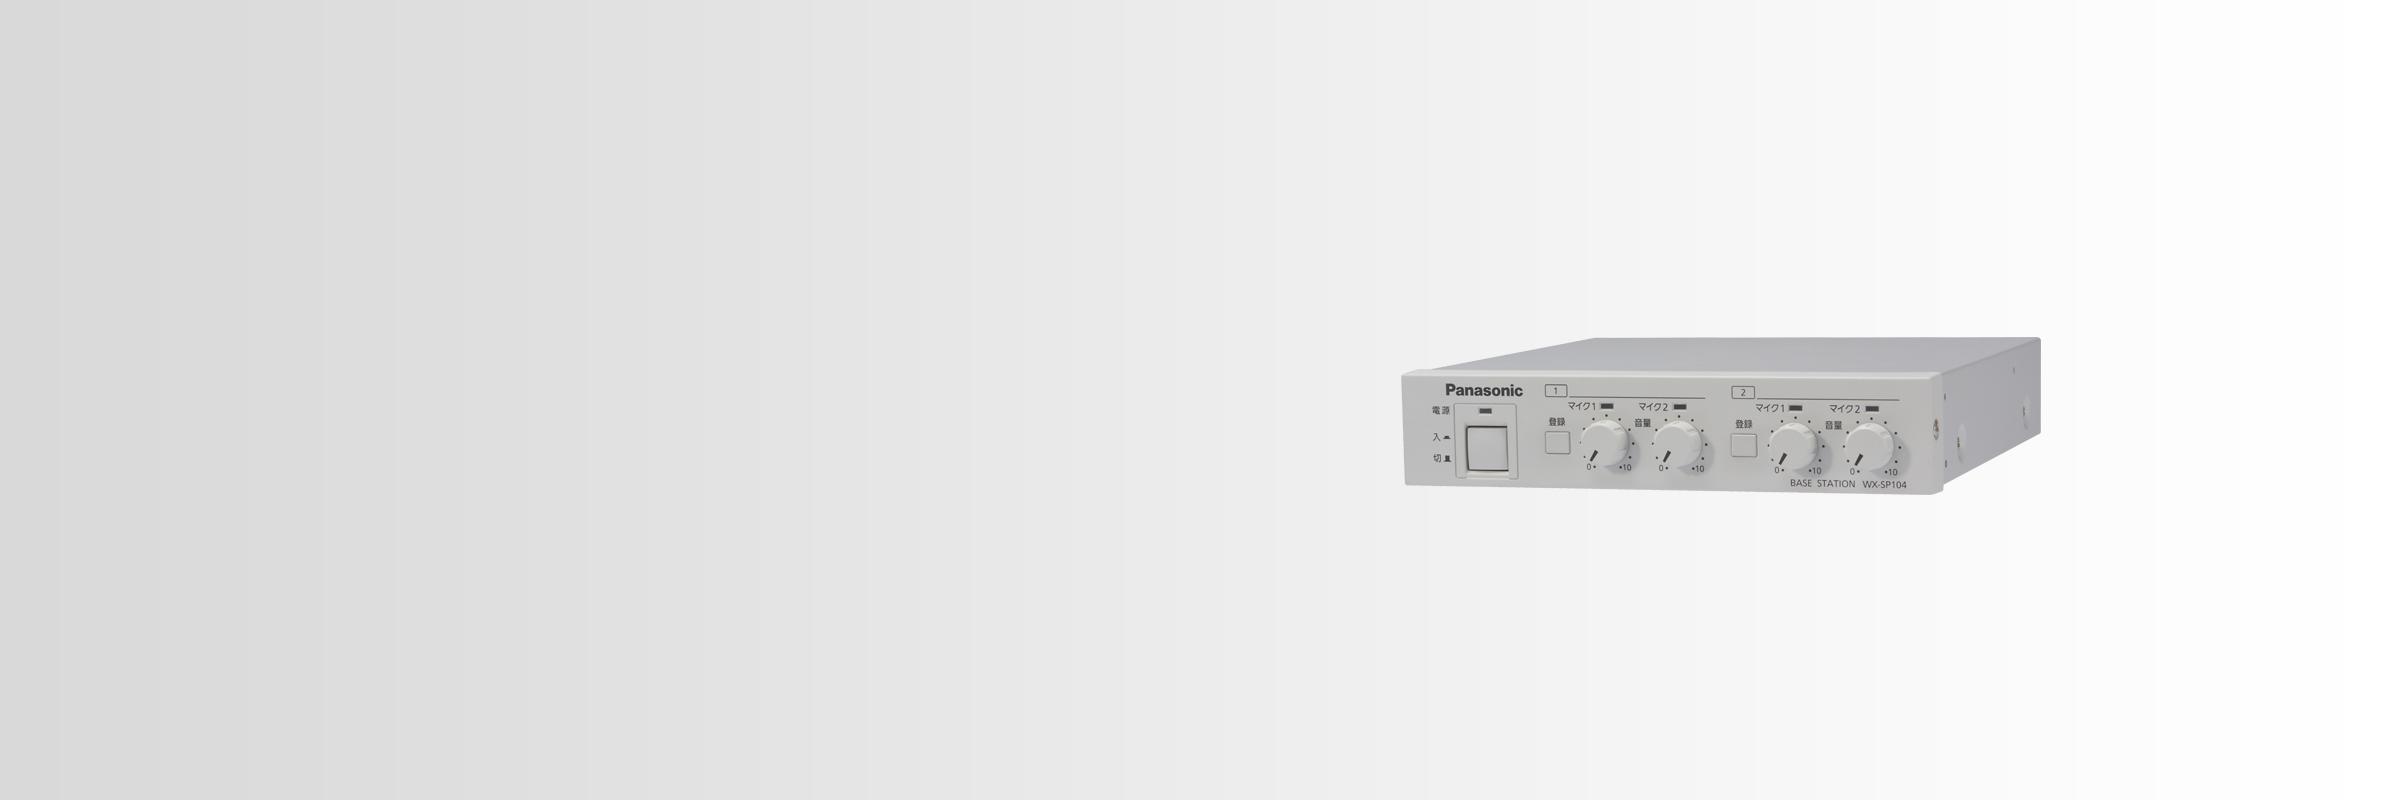 ベースステーション WX-SP104R1 - 製品一覧 - 1.9GHz 帯デジタル 